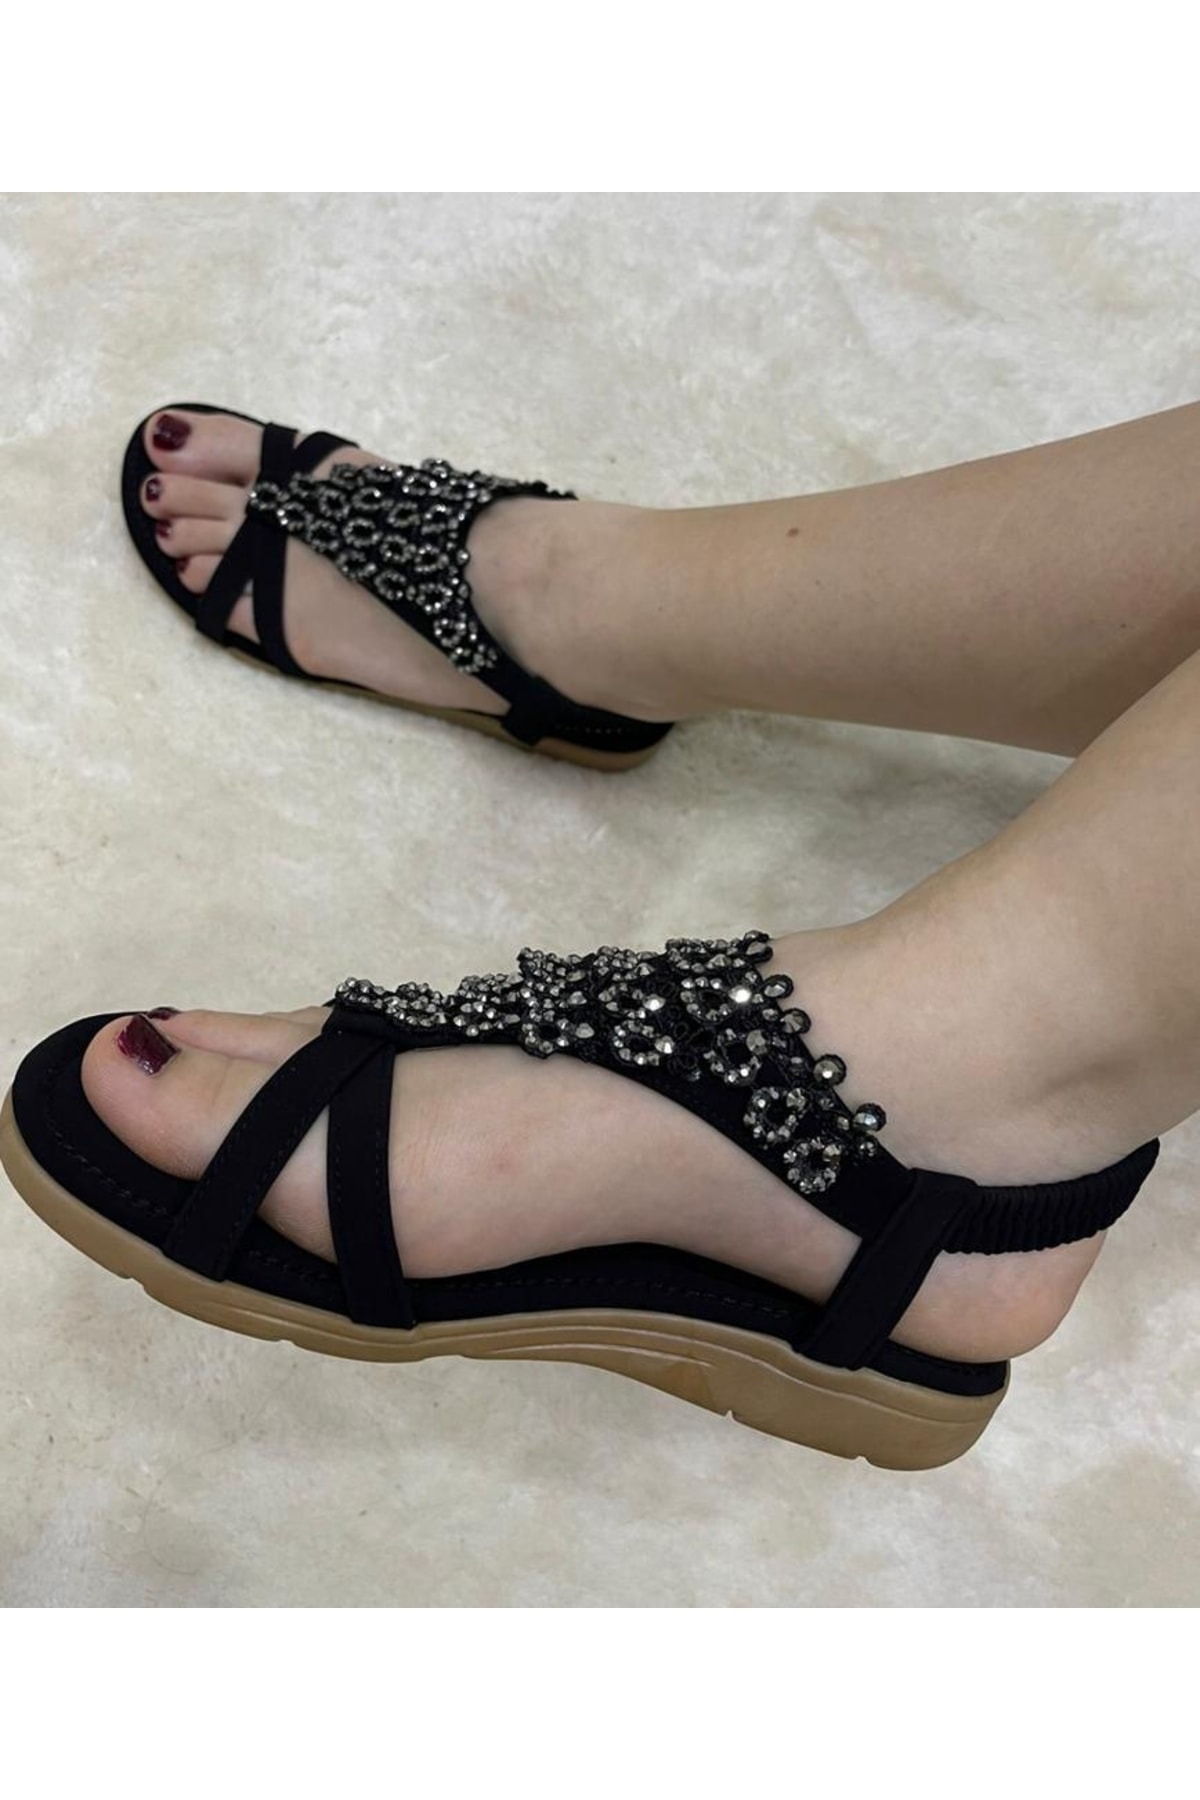 Guja Yazlık Çi Yumuşak Taban Üstü Boncuk Işlemeli Sandalet Ayakkabı